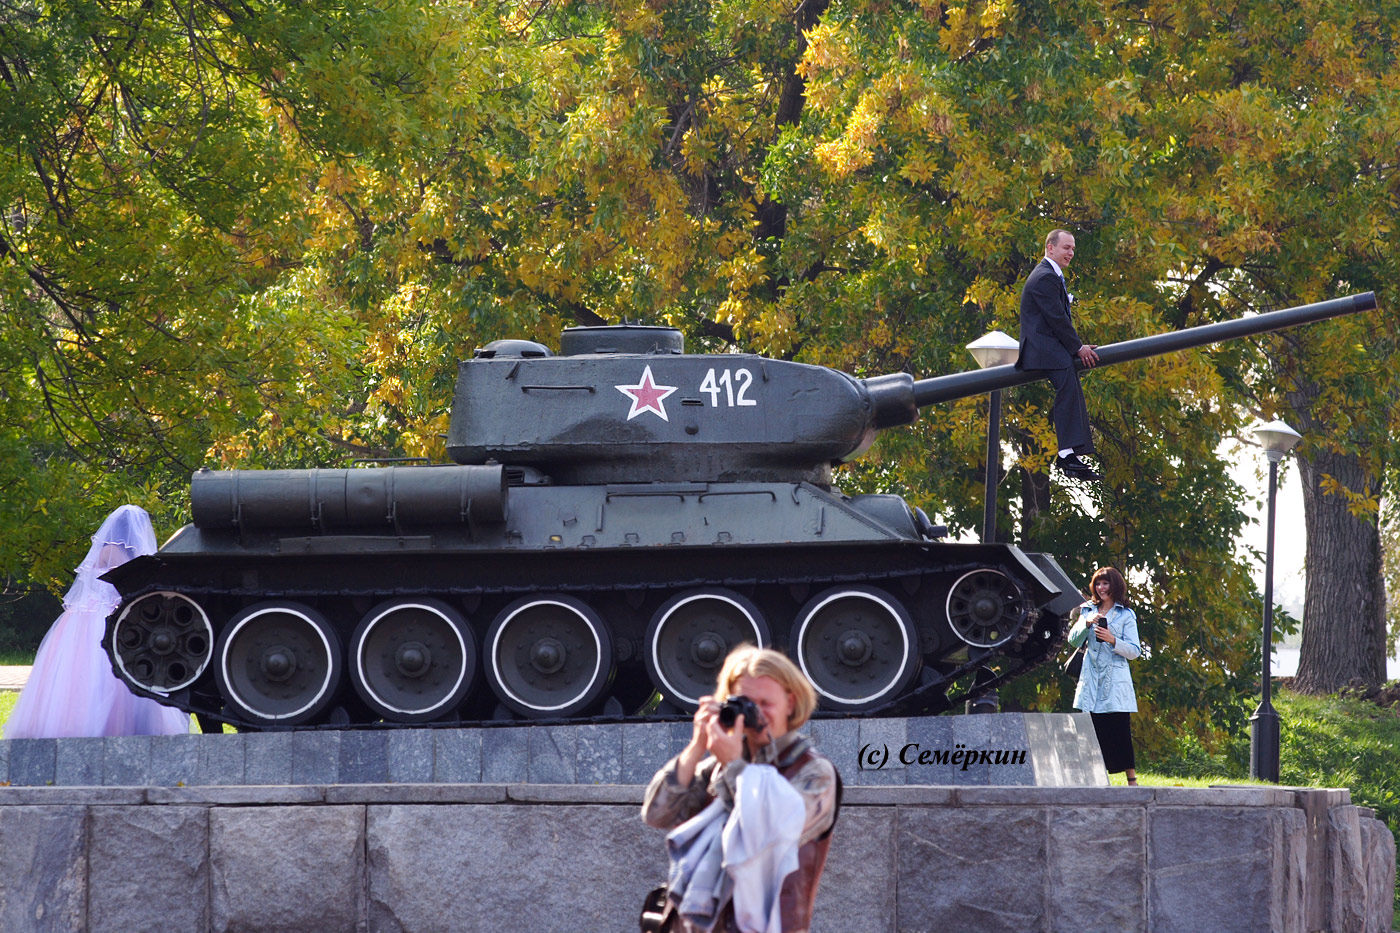 Нижний Новгород – фотографии разных лет… - свадебный штамп. Жених сидит на дуле танка (само дуло между ног находится), а бедняжка-невеста пытается гусеничную многотонную махину толкнуть